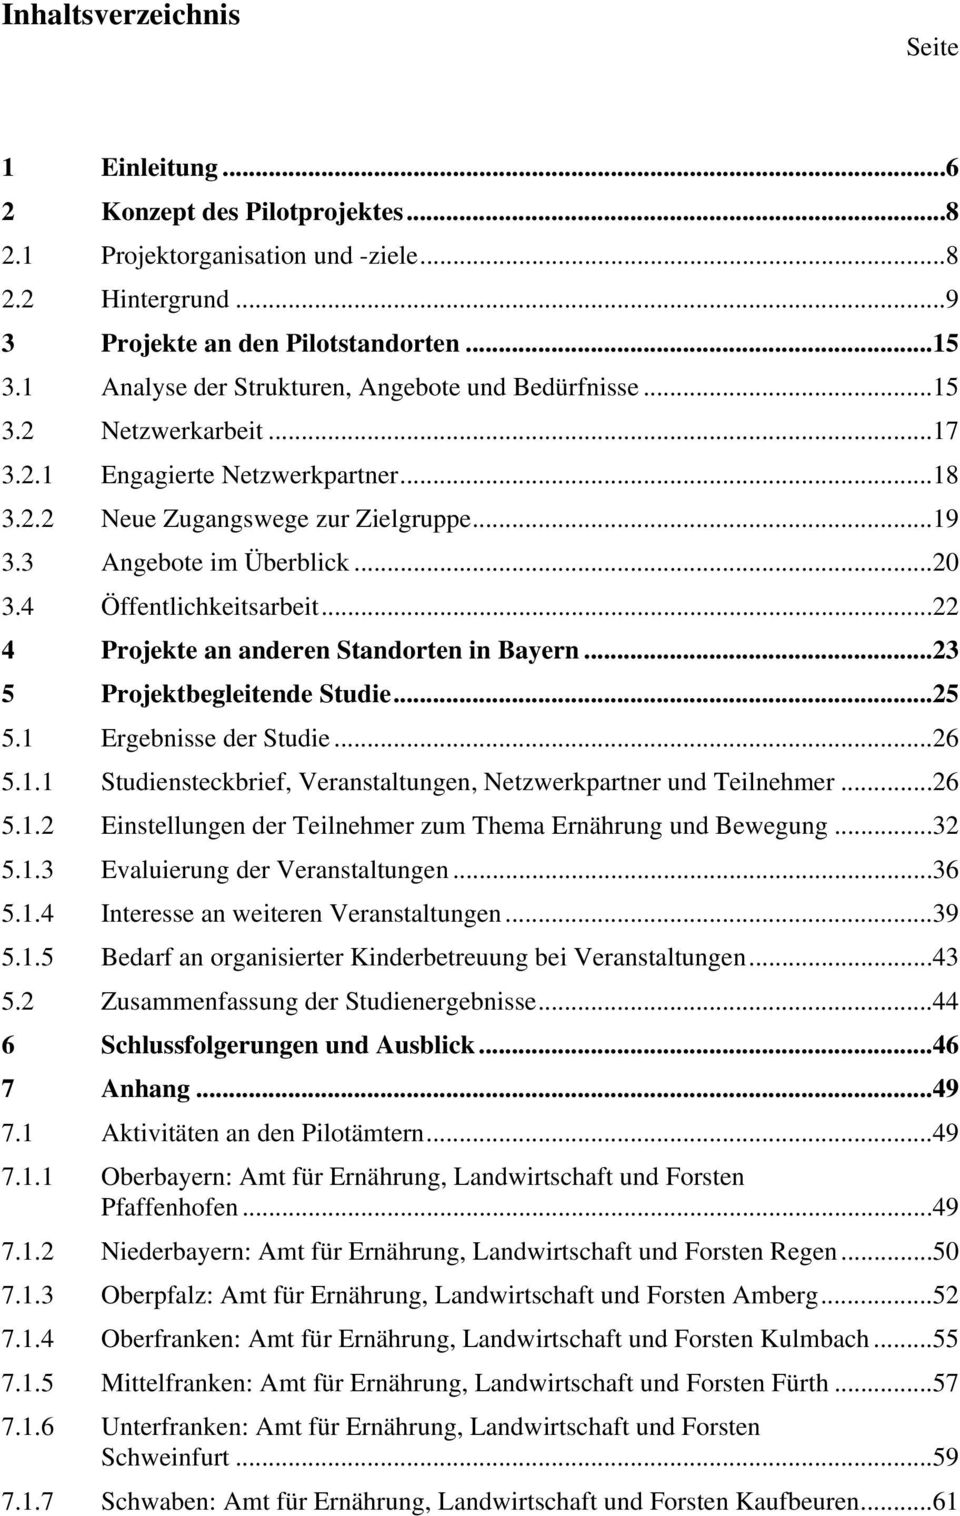 4 Öffentlichkeitsarbeit...22 4 Projekte an anderen Standorten in Bayern...23 5 Projektbegleitende Studie...25 5.1 Ergebnisse der Studie...26 5.1.1 Studiensteckbrief, Veranstaltungen, Netzwerkpartner und Teilnehmer.